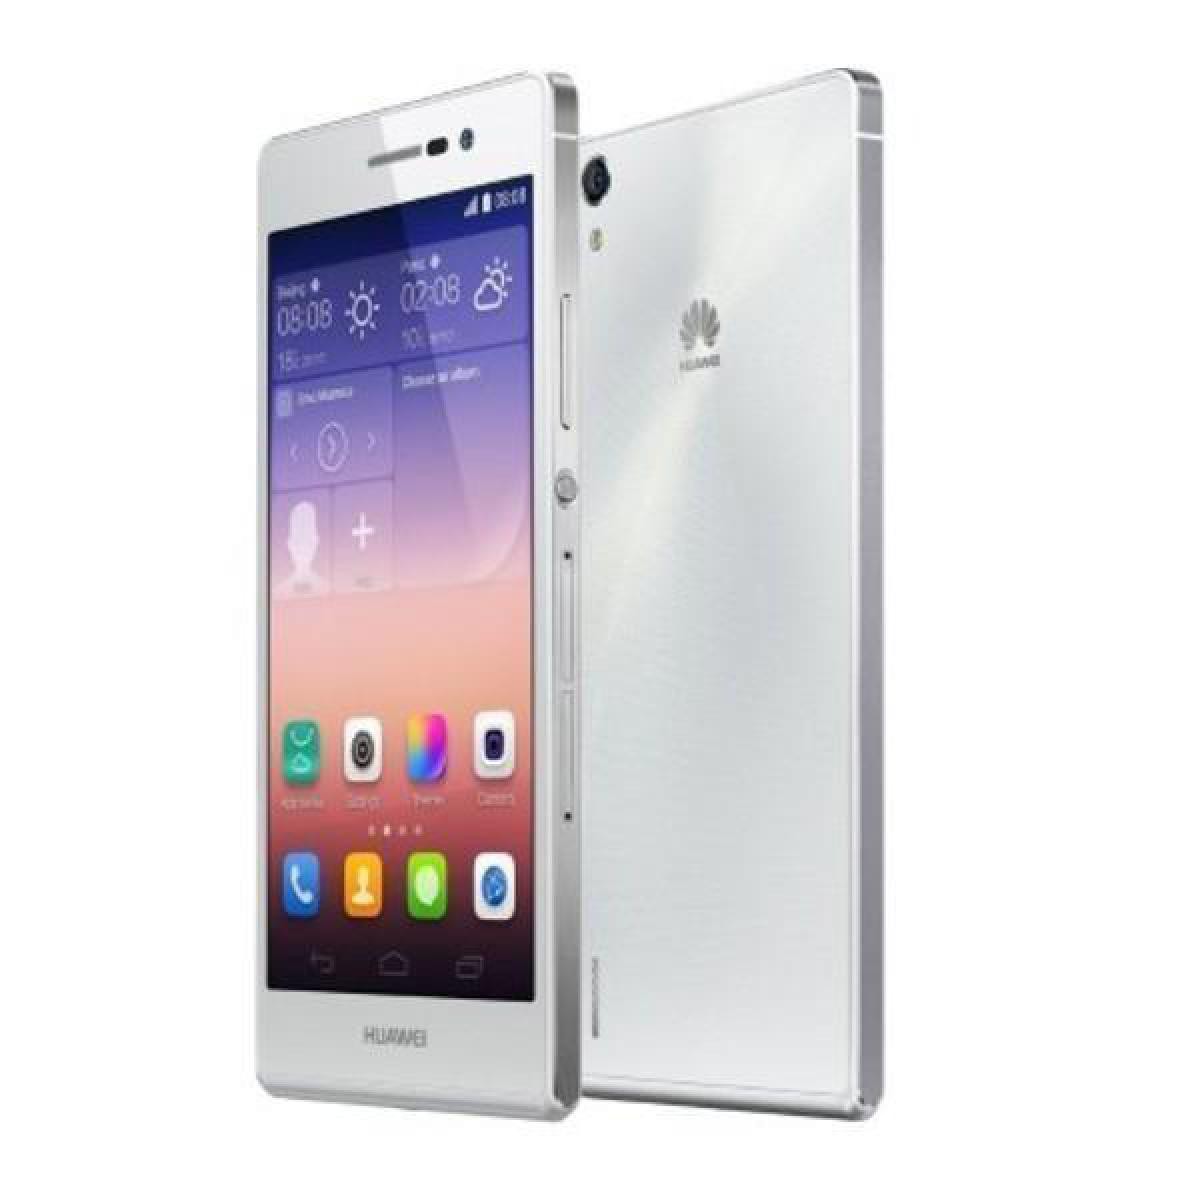 Huawei - Huawei Ascend P7 16 Go Blanc - débloqué tout opérateur - Smartphone Android